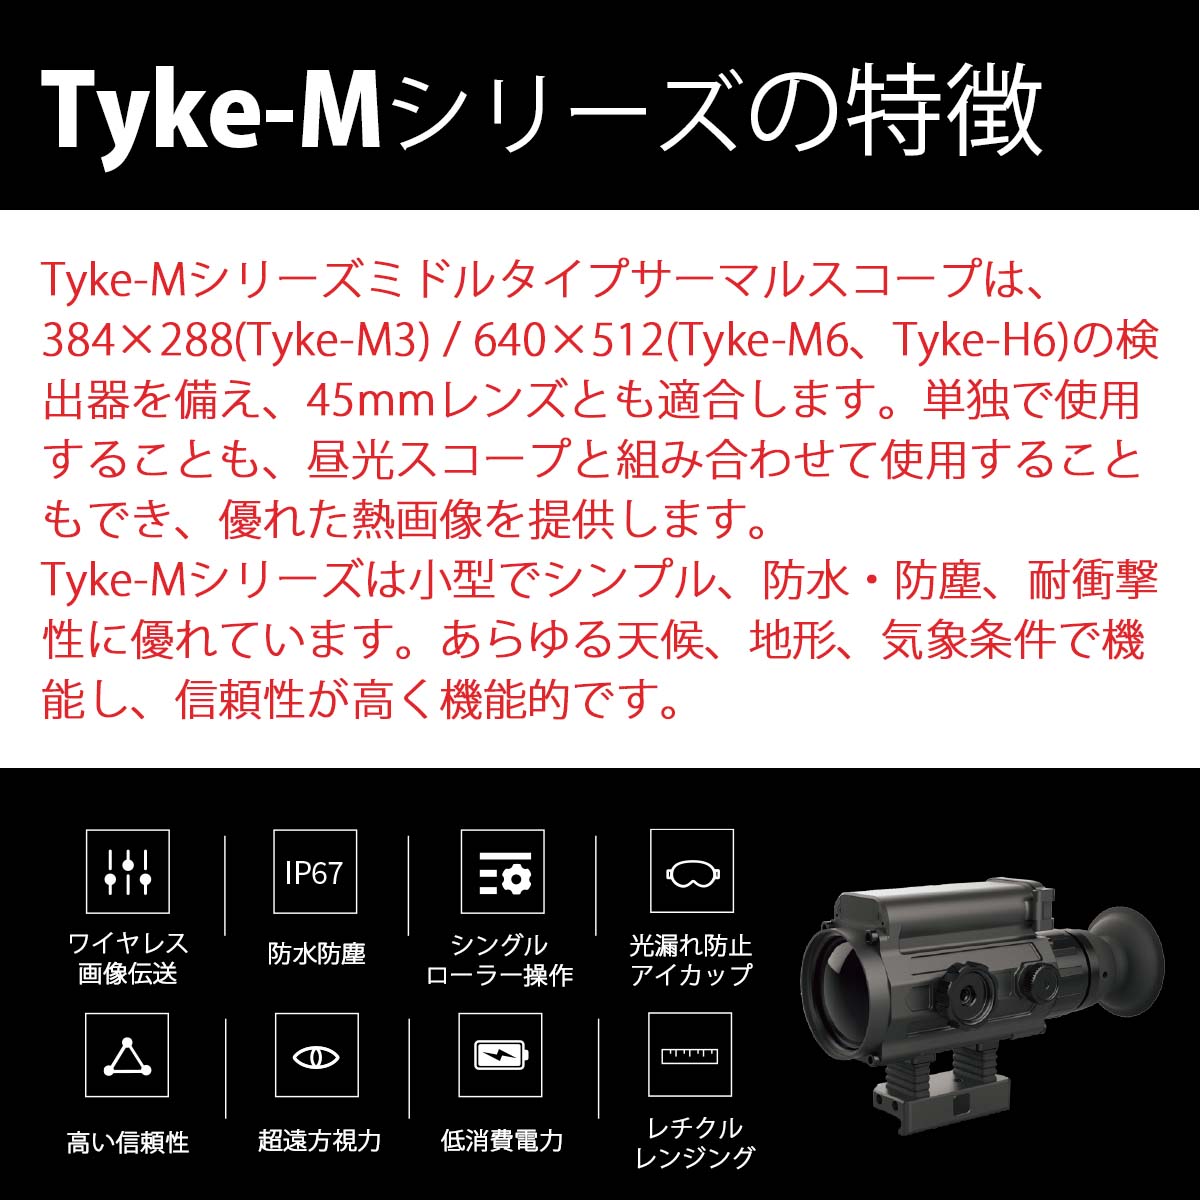 IRAY ミドルタイプサーマルスコープ Tyke-Mシリーズ Tyke-M6 光学機器,暗視スコープ タイムテクノロジー公式ショップ